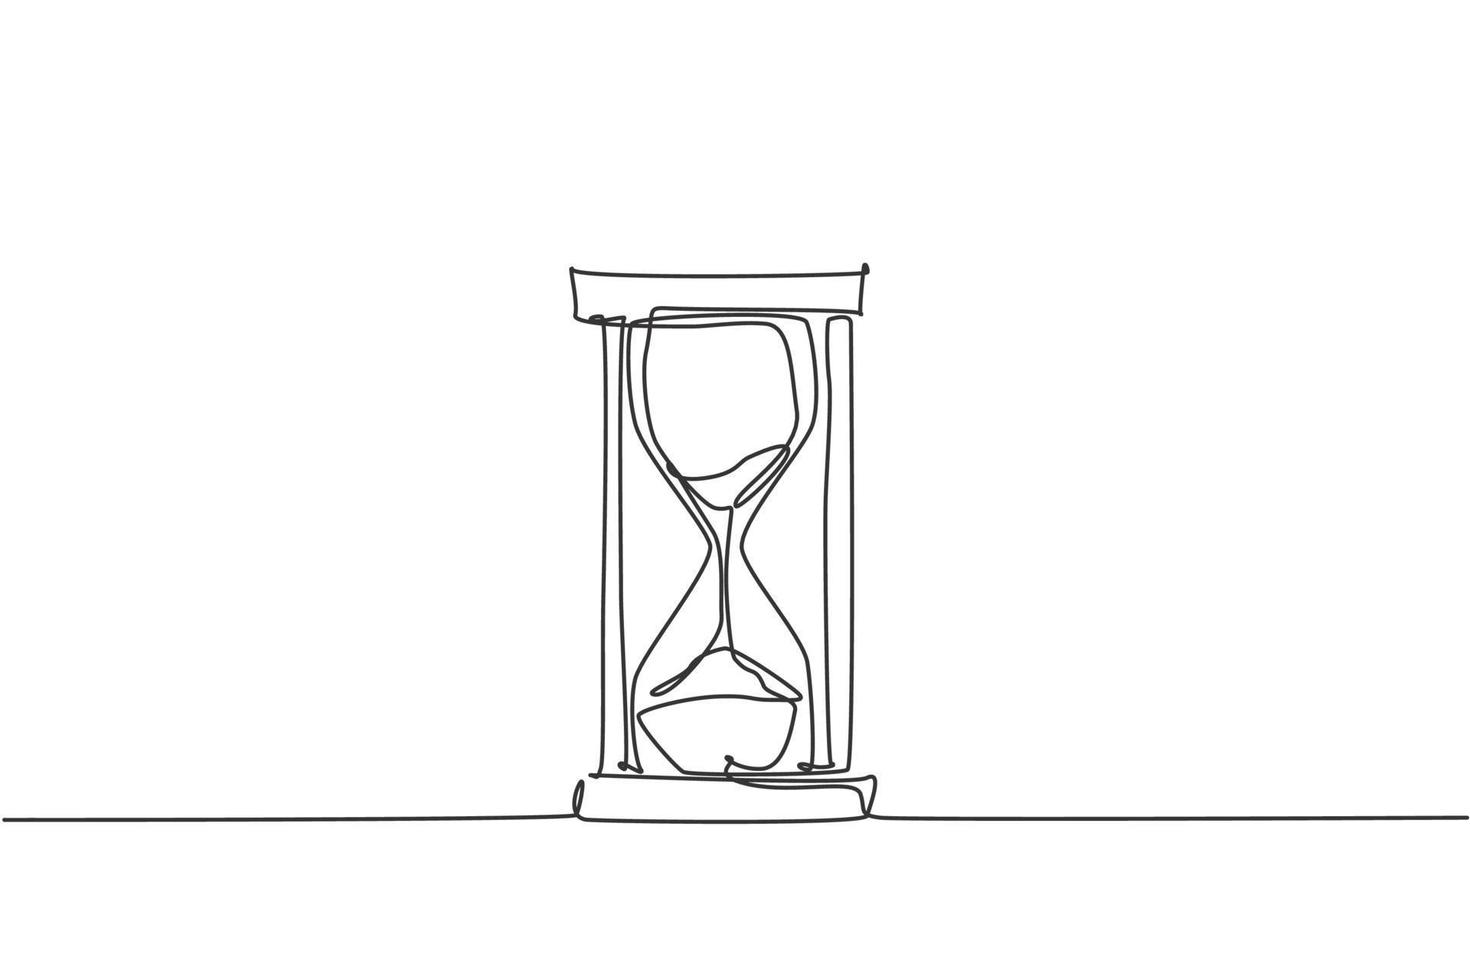 en kontinuerlig linjeteckning av gammalt klassiskt timglas. sandglas för att visa tidsfrist vid affärsmetafor koncept. trendig enkel linje rita design vektor grafisk illustration